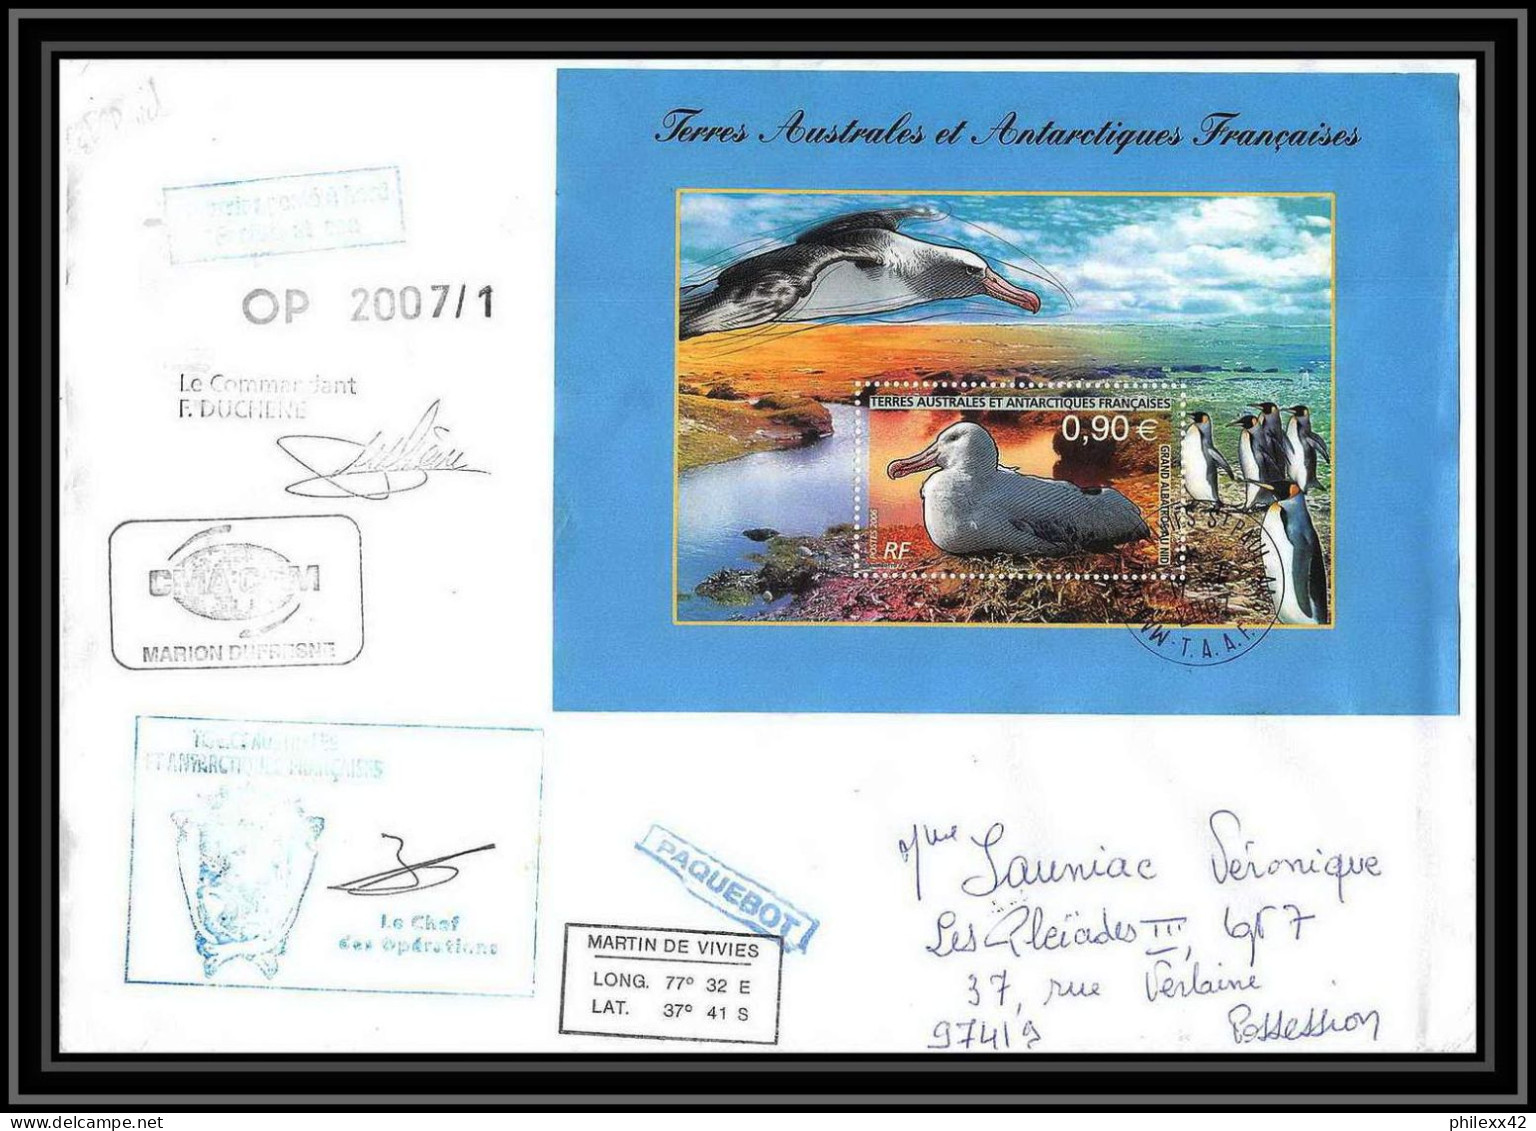 2686 ANTARCTIC Terres Australes TAAF Lettre Dufresne Signé Signed ST PAUL Comptes Réunion Bloc N°16 17/4/2007 - Spedizioni Antartiche